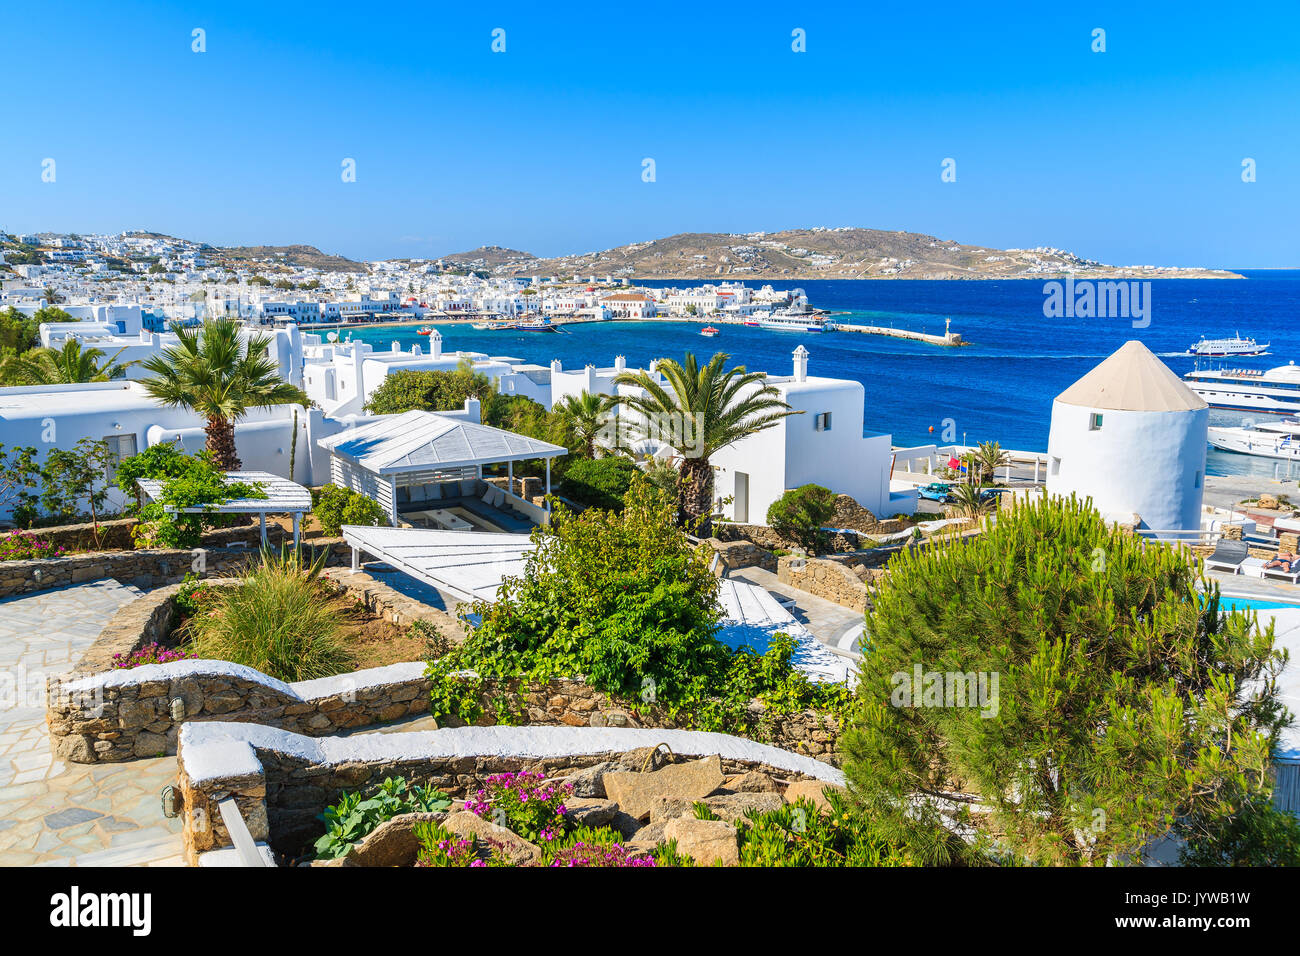 Ruelles dans jardin sur la côte de l'île de Mykonos, Grèce Banque D'Images